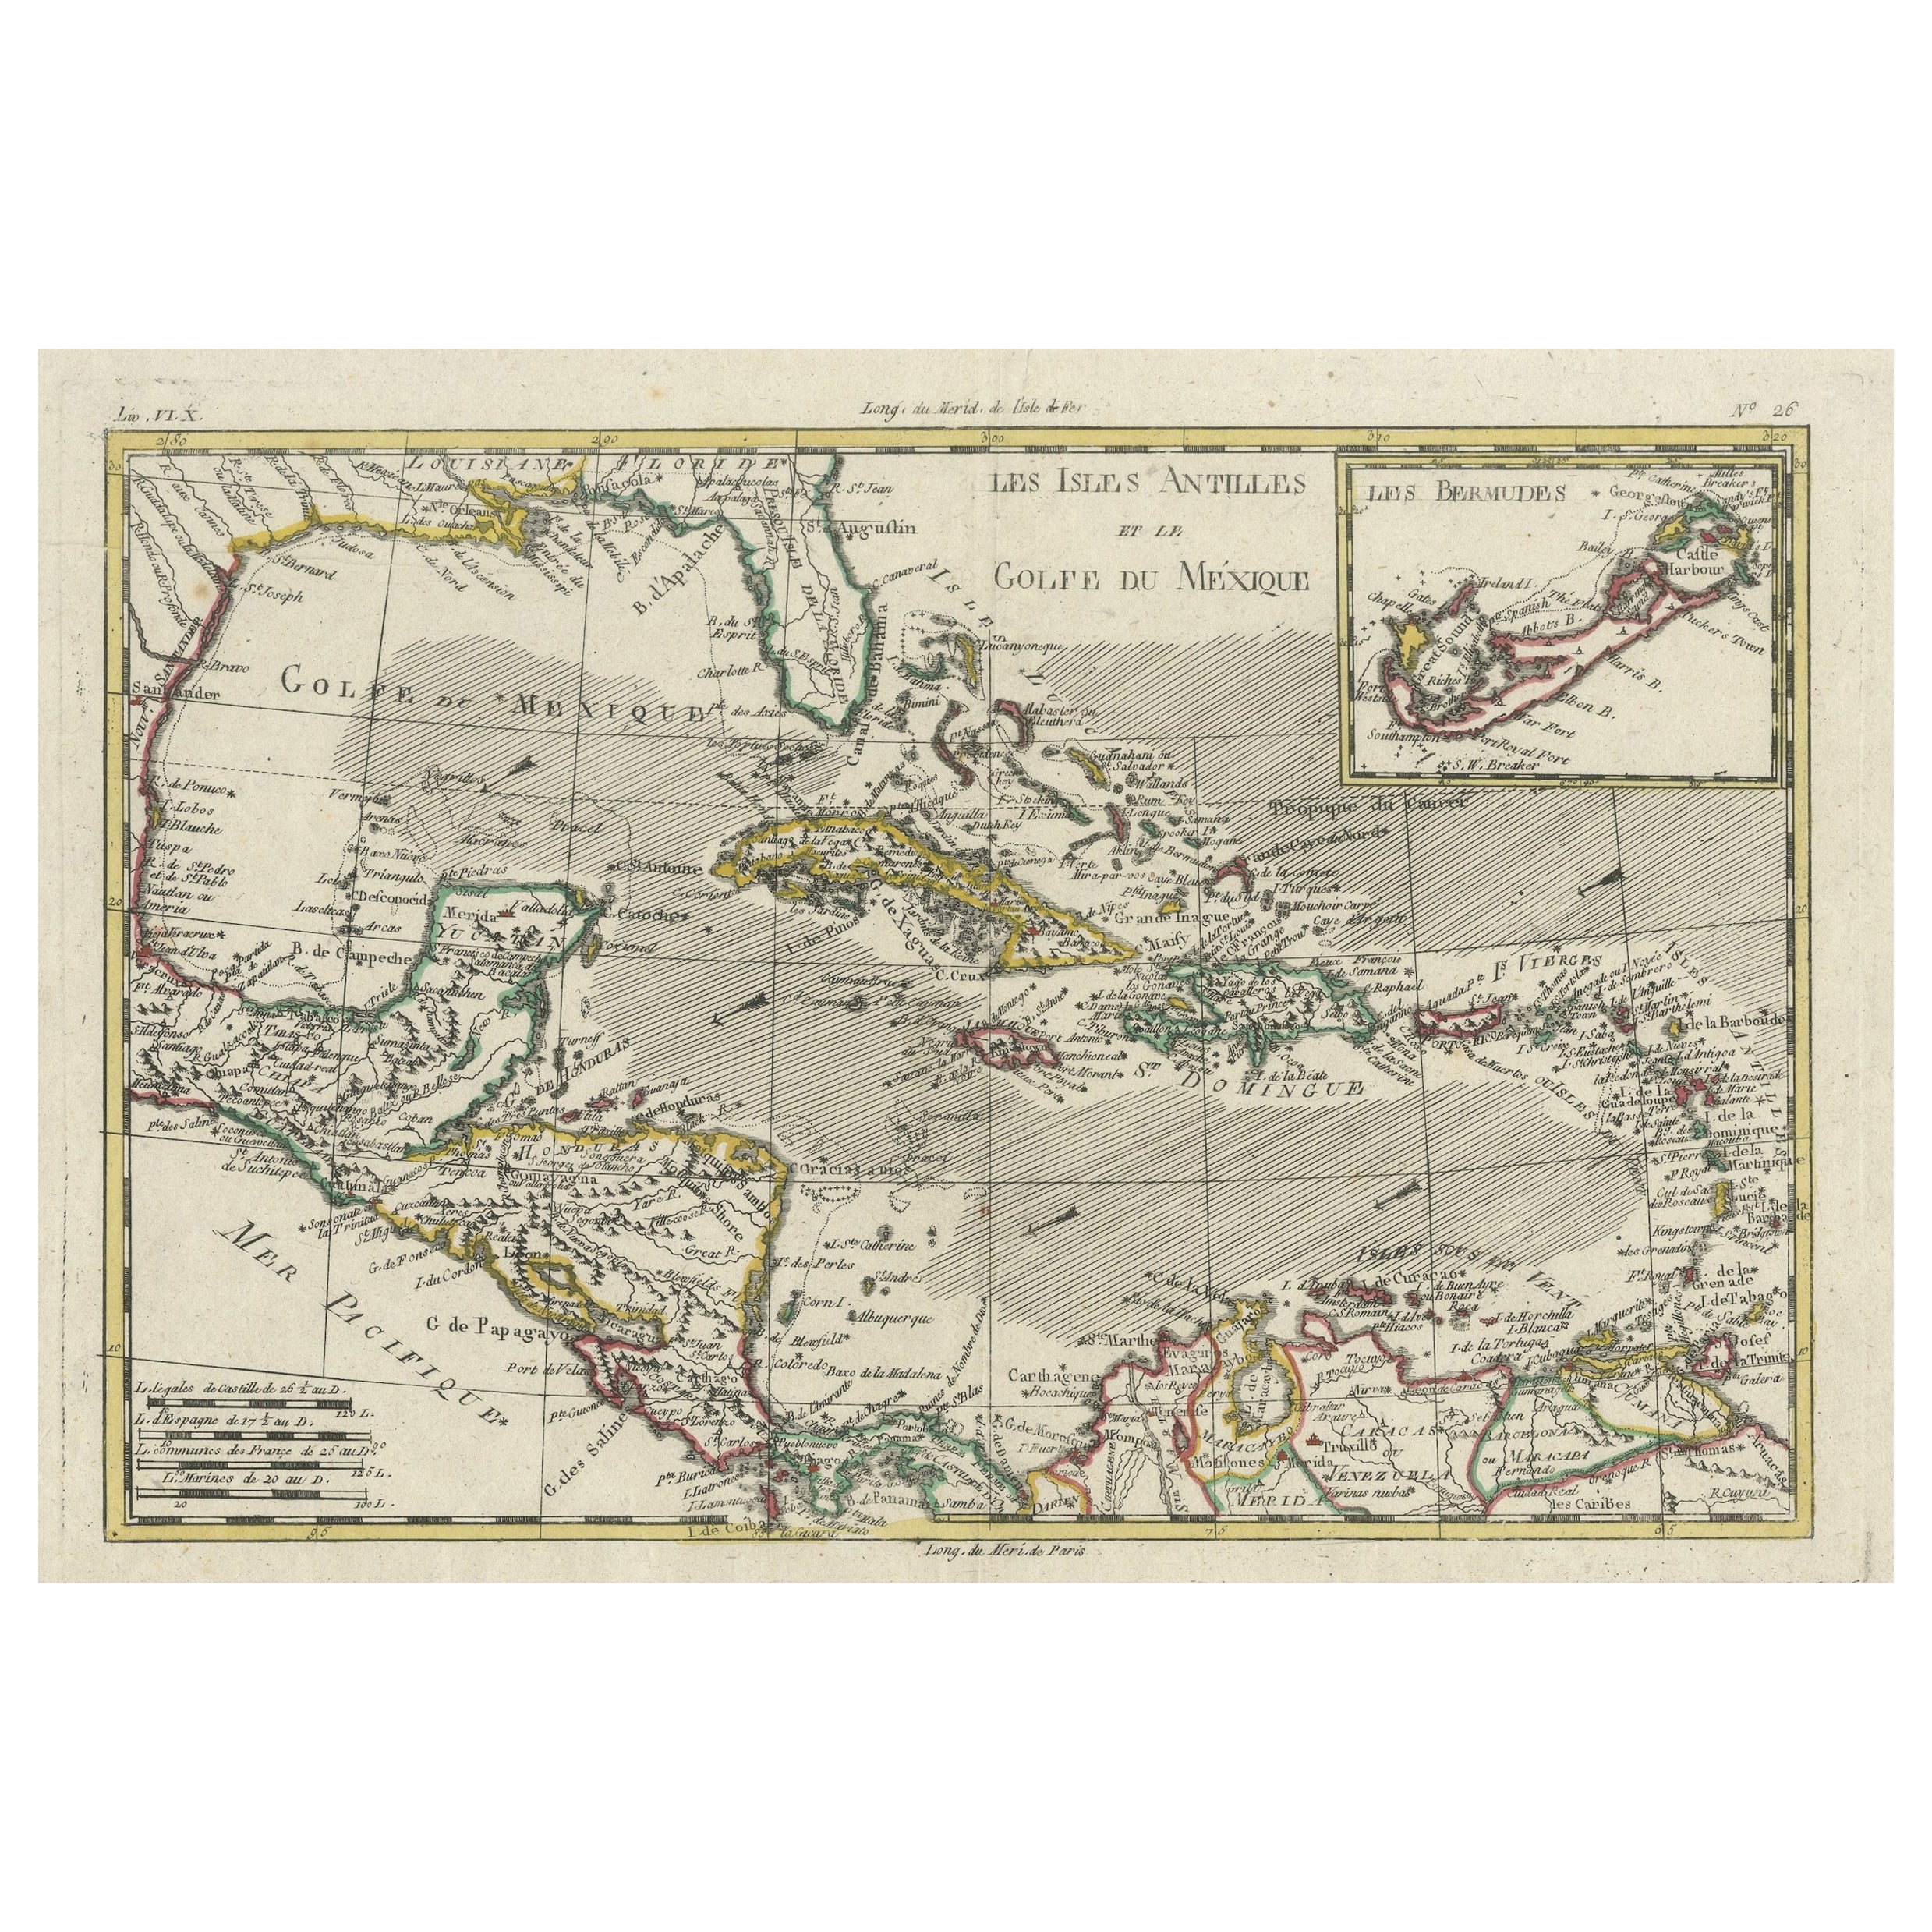 Gravure originale des Antilles, Caraïbes occidentales, Golfe du Mexique, 1780